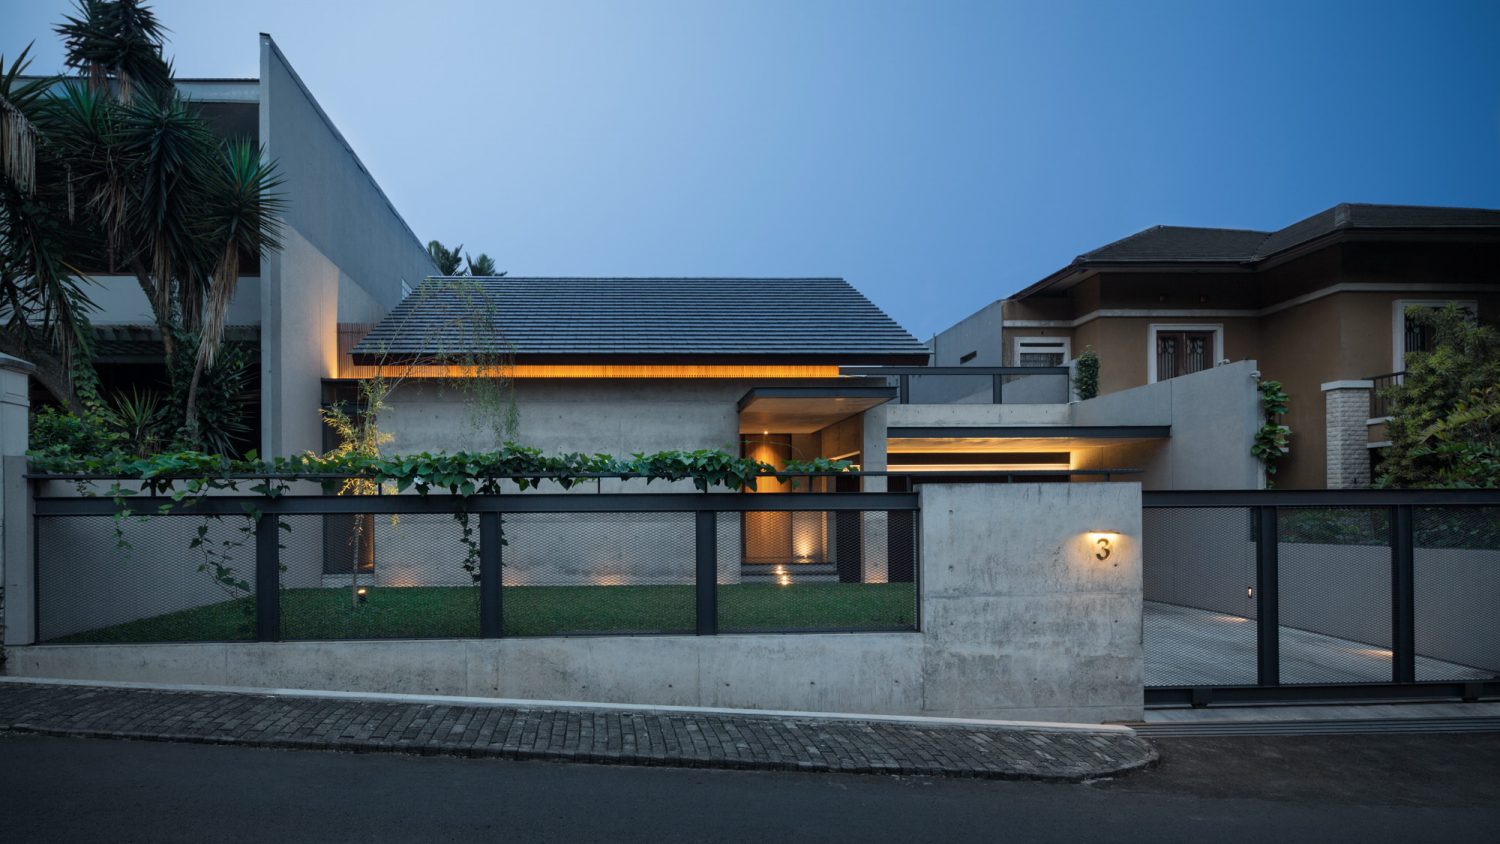 Hikari House by Pranala Associates